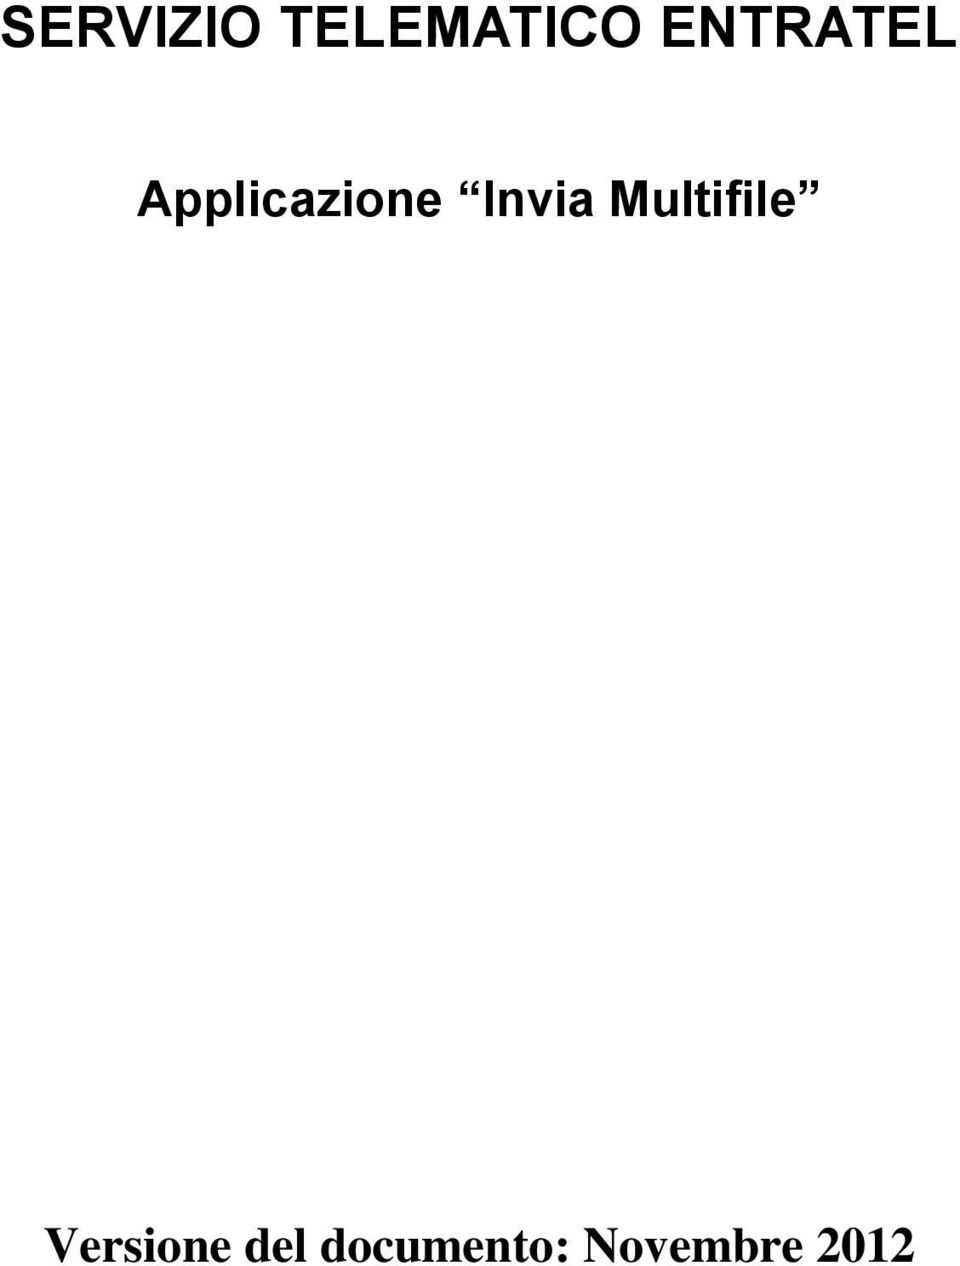 Invia Multifile